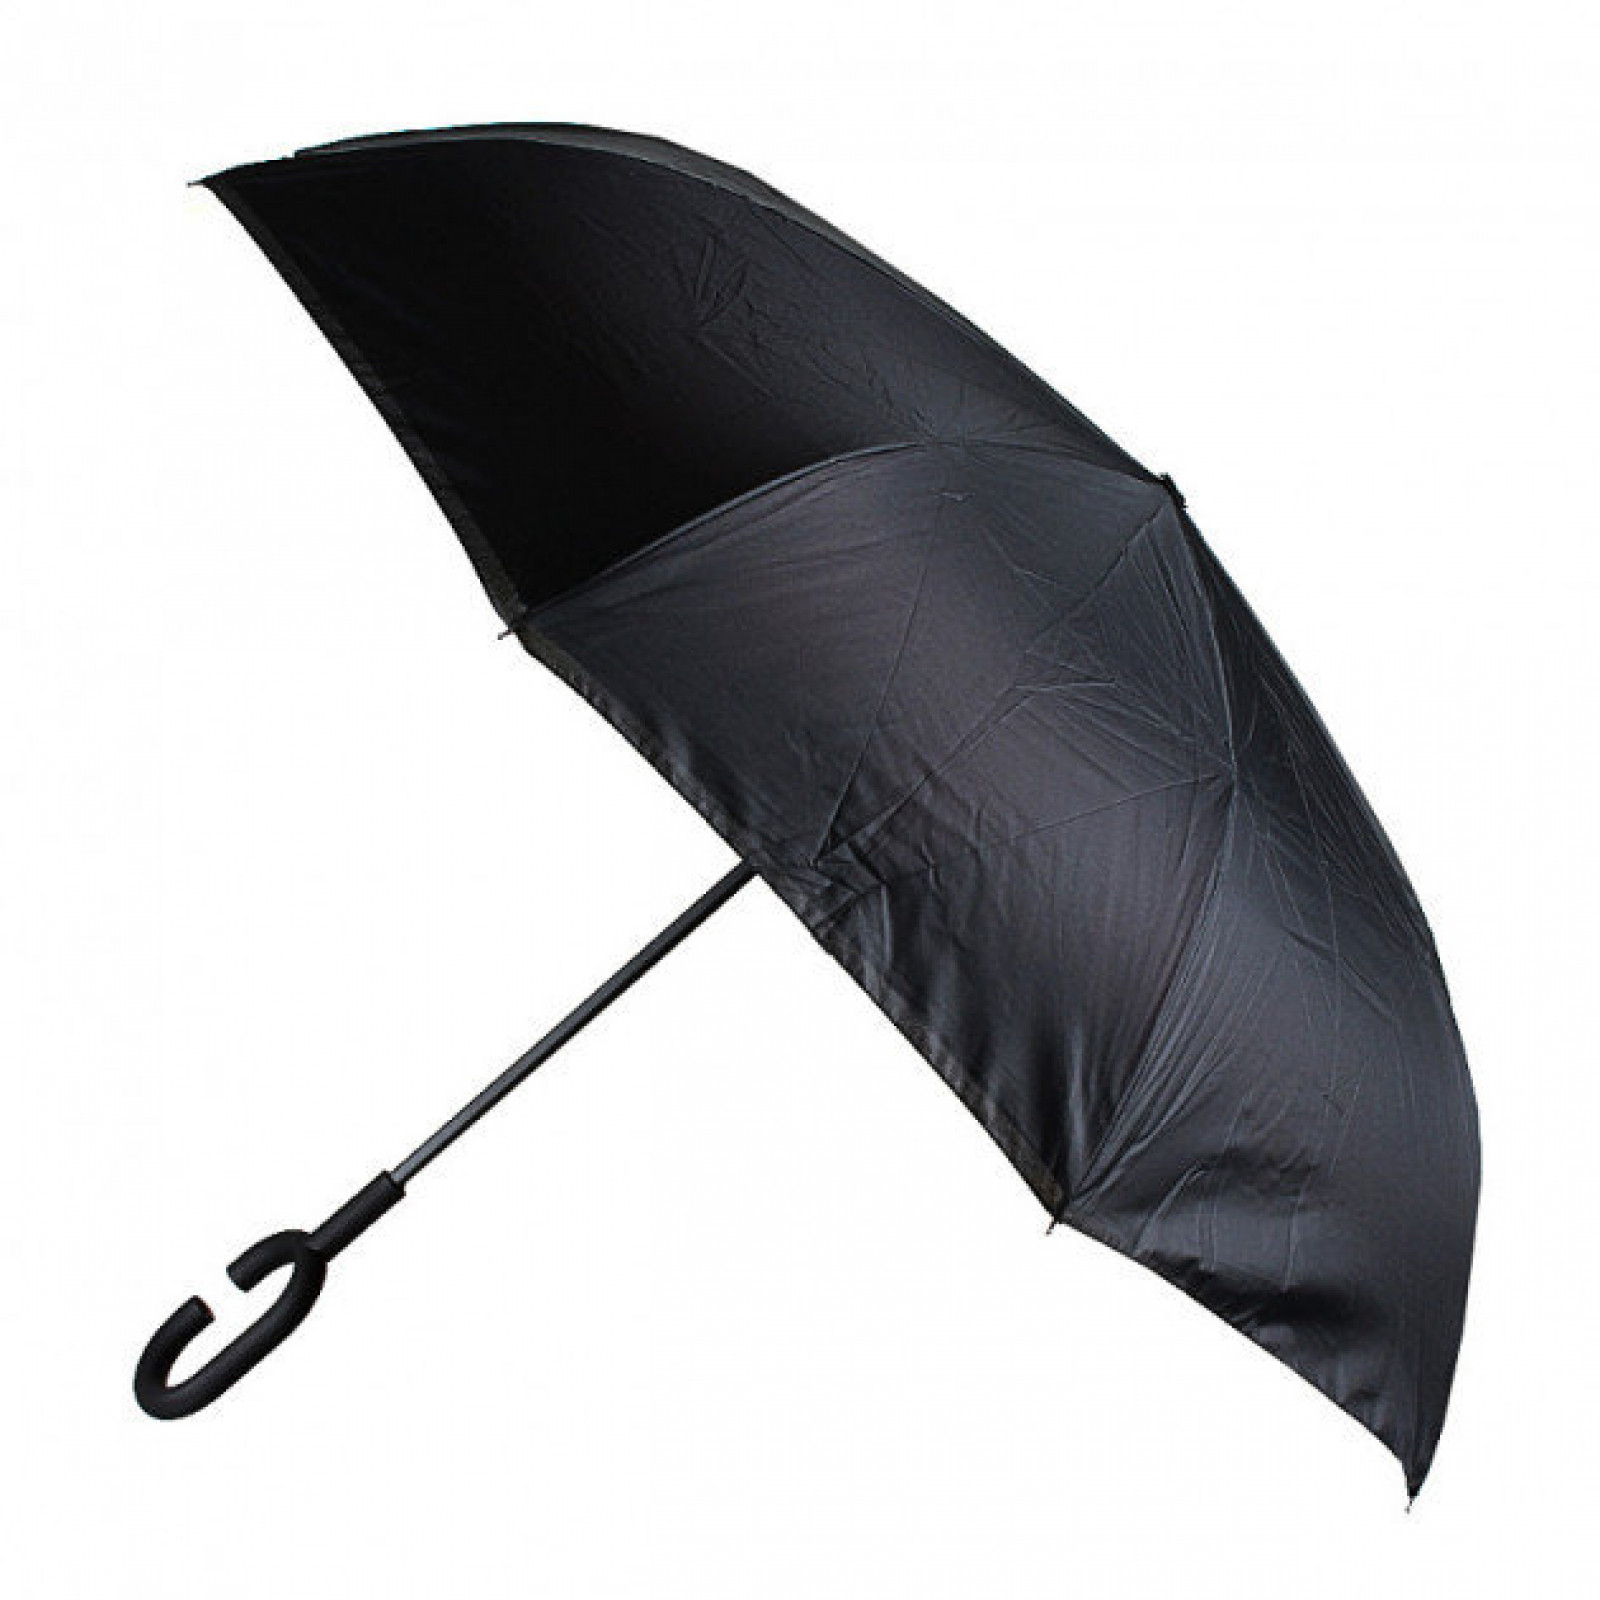 Зонт обратного сложения, антизонт, умный зонт, зонт наоборот Up Brella Узор-Бежевый 154052